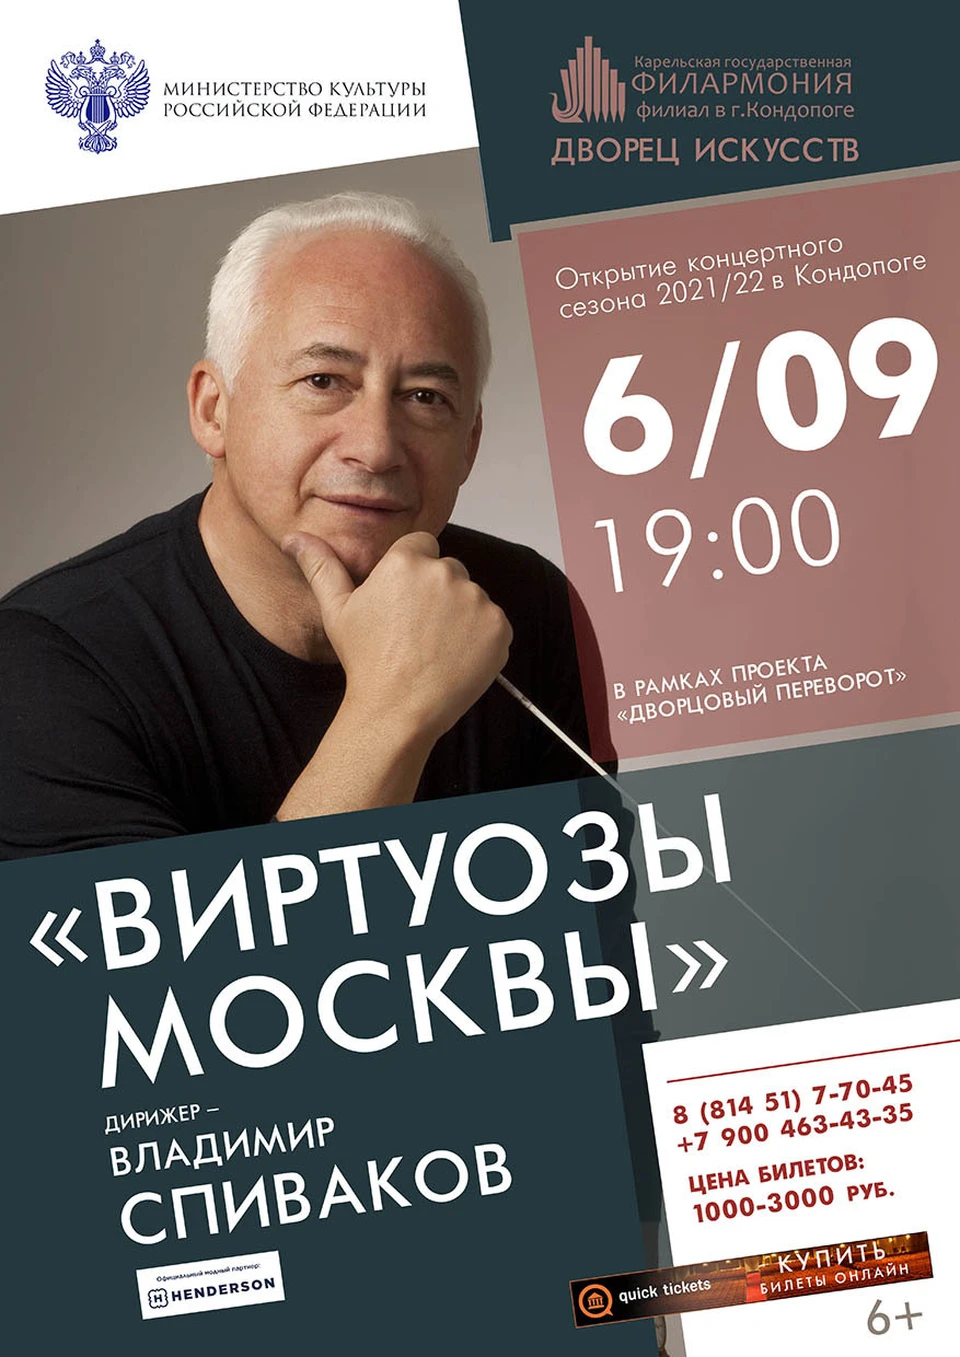 афиша концерта Государственного камерного оркестра «Виртуозы Москвы» в г. Кондопога